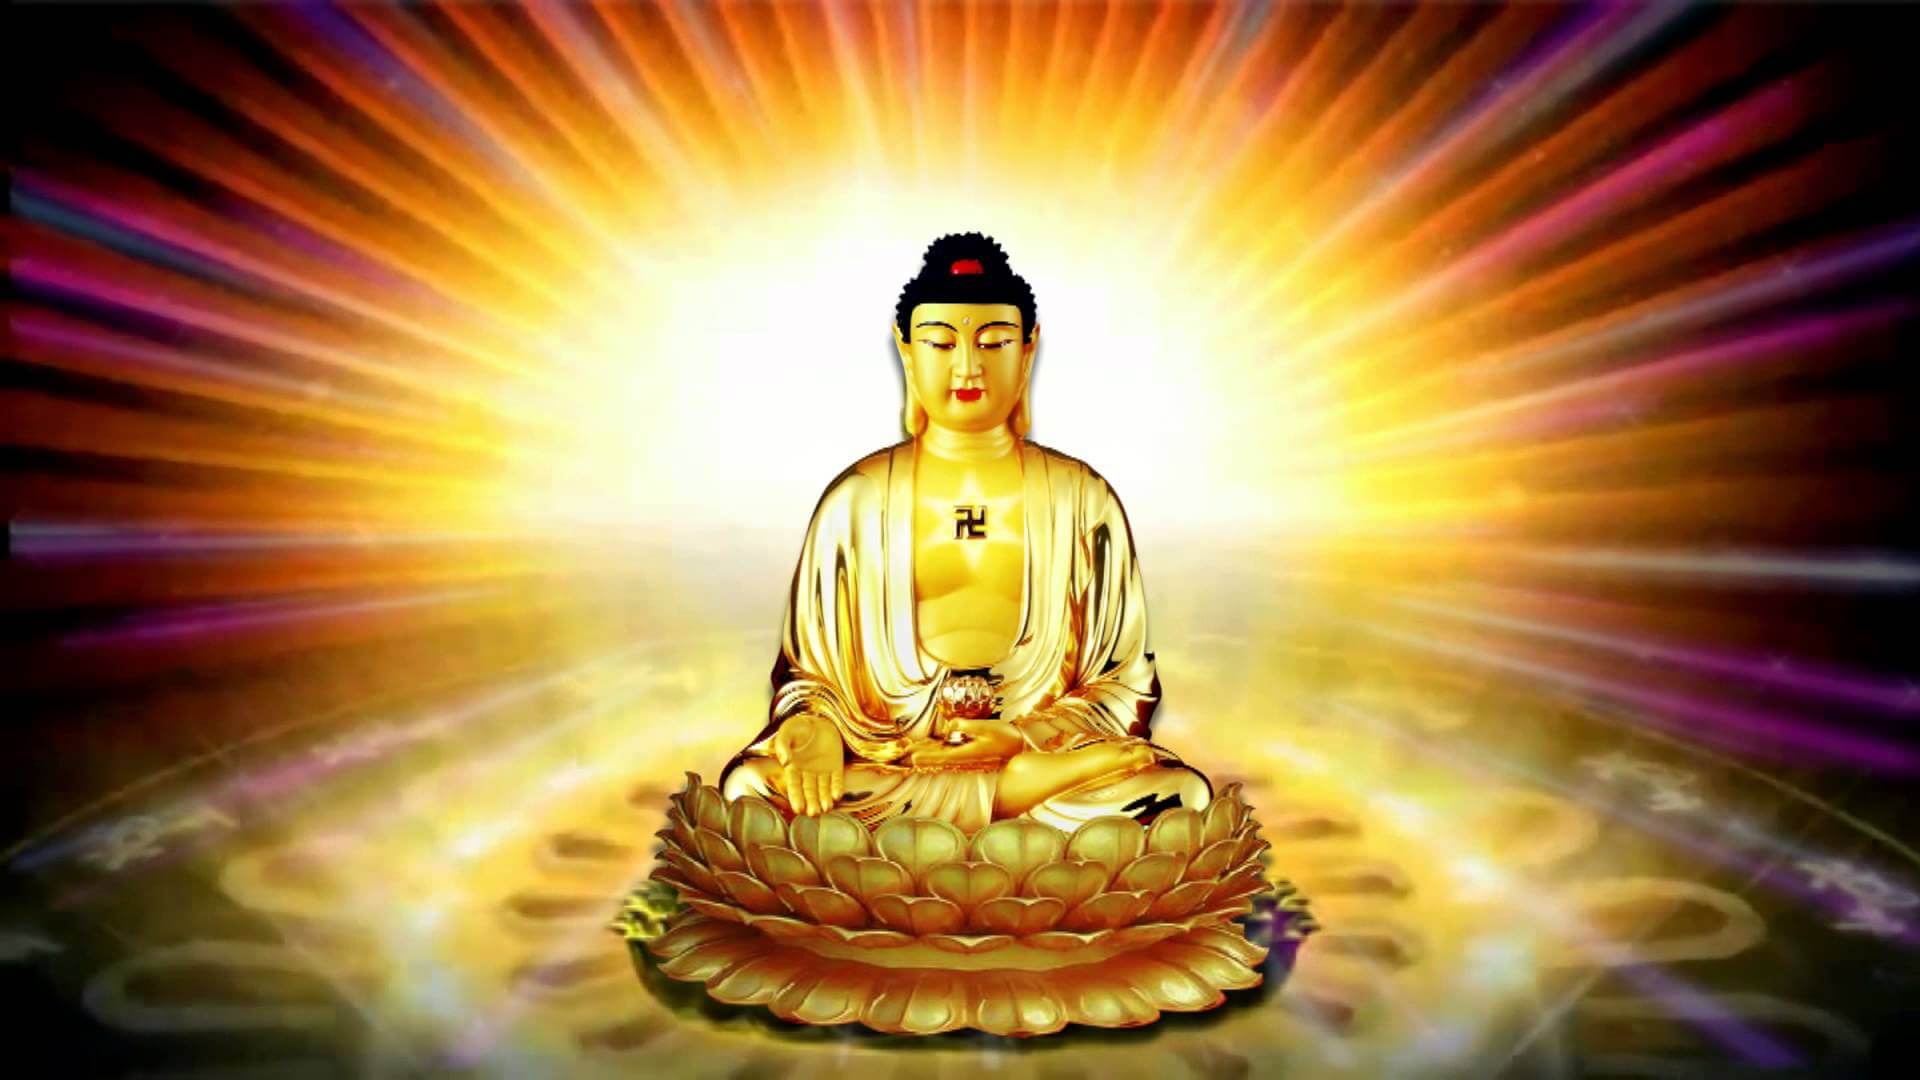 Ảnh Phật A Di Đà 3D: Ảnh Phật A Di Đà 3D sẽ đưa bạn đến một thế giới bị phân tâm, bỡ ngỡ để cảm nhận sự thanh tịnh và tĩnh lặng. Với sự hiện đại của công nghệ, hình ảnh siêu thực của Đức Phật sẽ mang đến cho bạn một trải nghiệm đầy kinh ngạc và tuyệt vời.